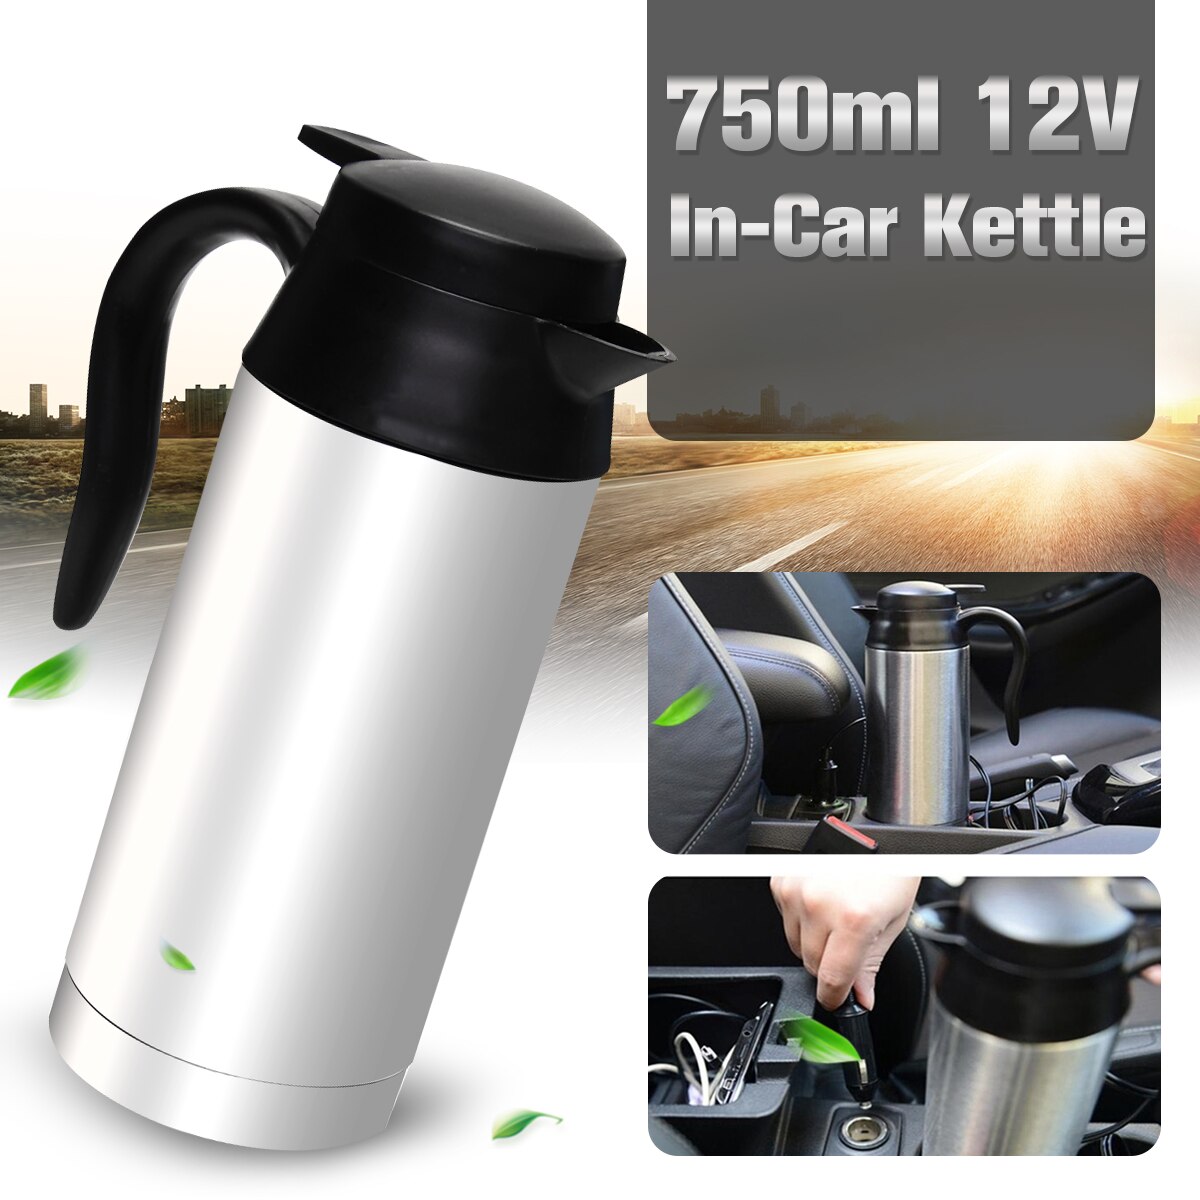 Bilbaseret opvarmning rustfrit stål kop kedel rejse tur kaffe te opvarmet krus motor vand til bil eller lastbil brug 750ml 12v